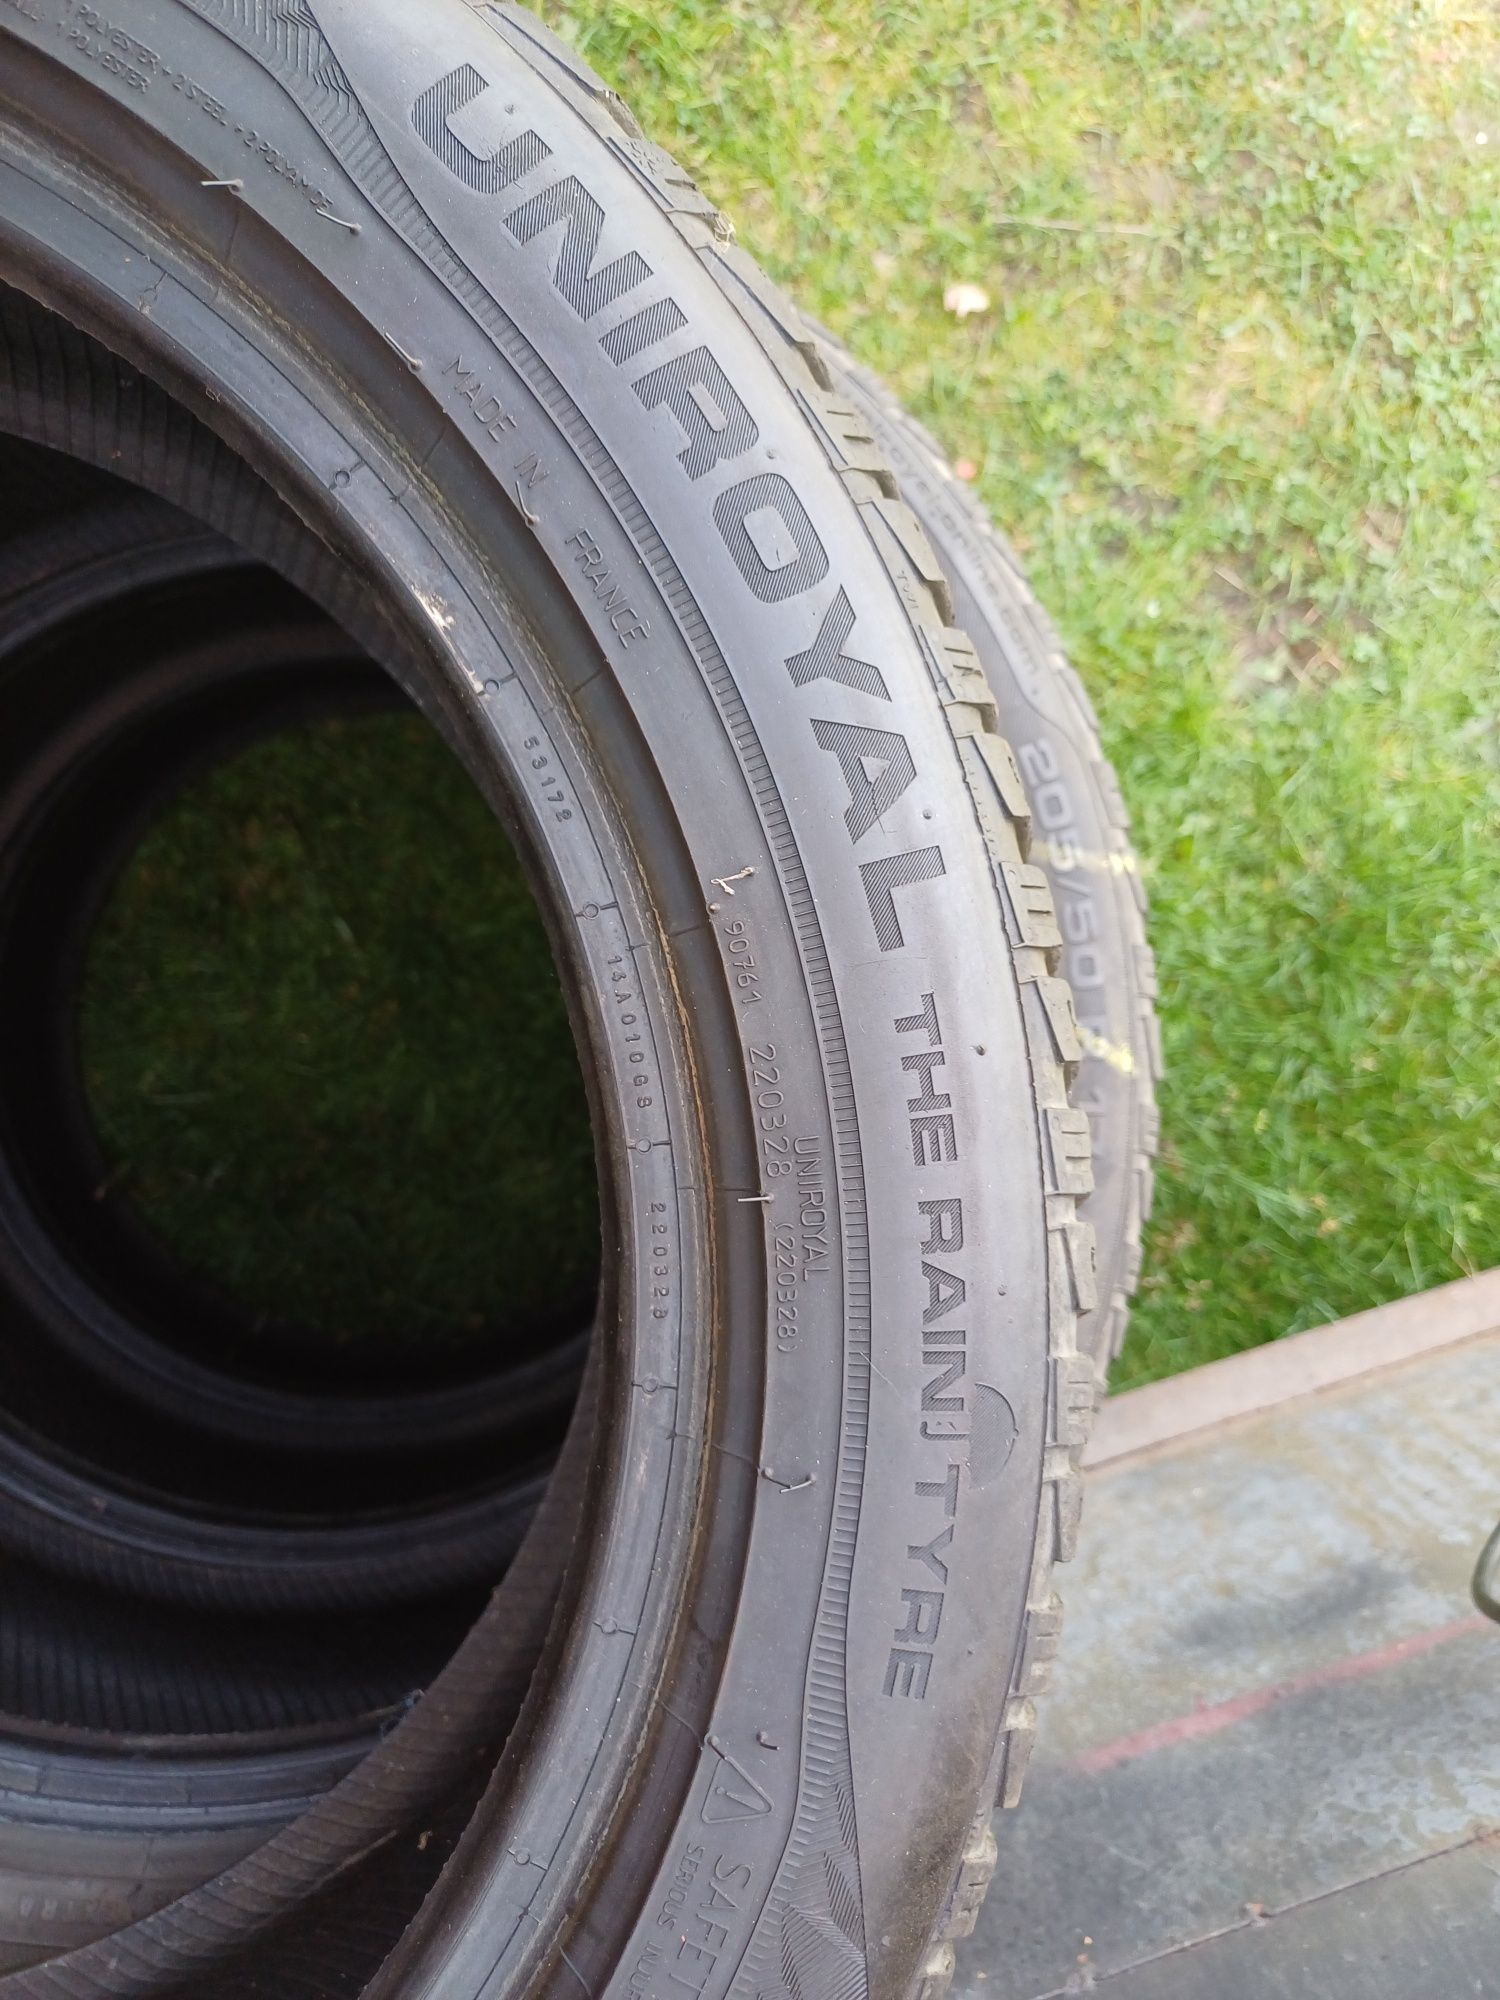 4 Opony wielosezonowe  Uniroyal the rain tyre  205 50 R 17